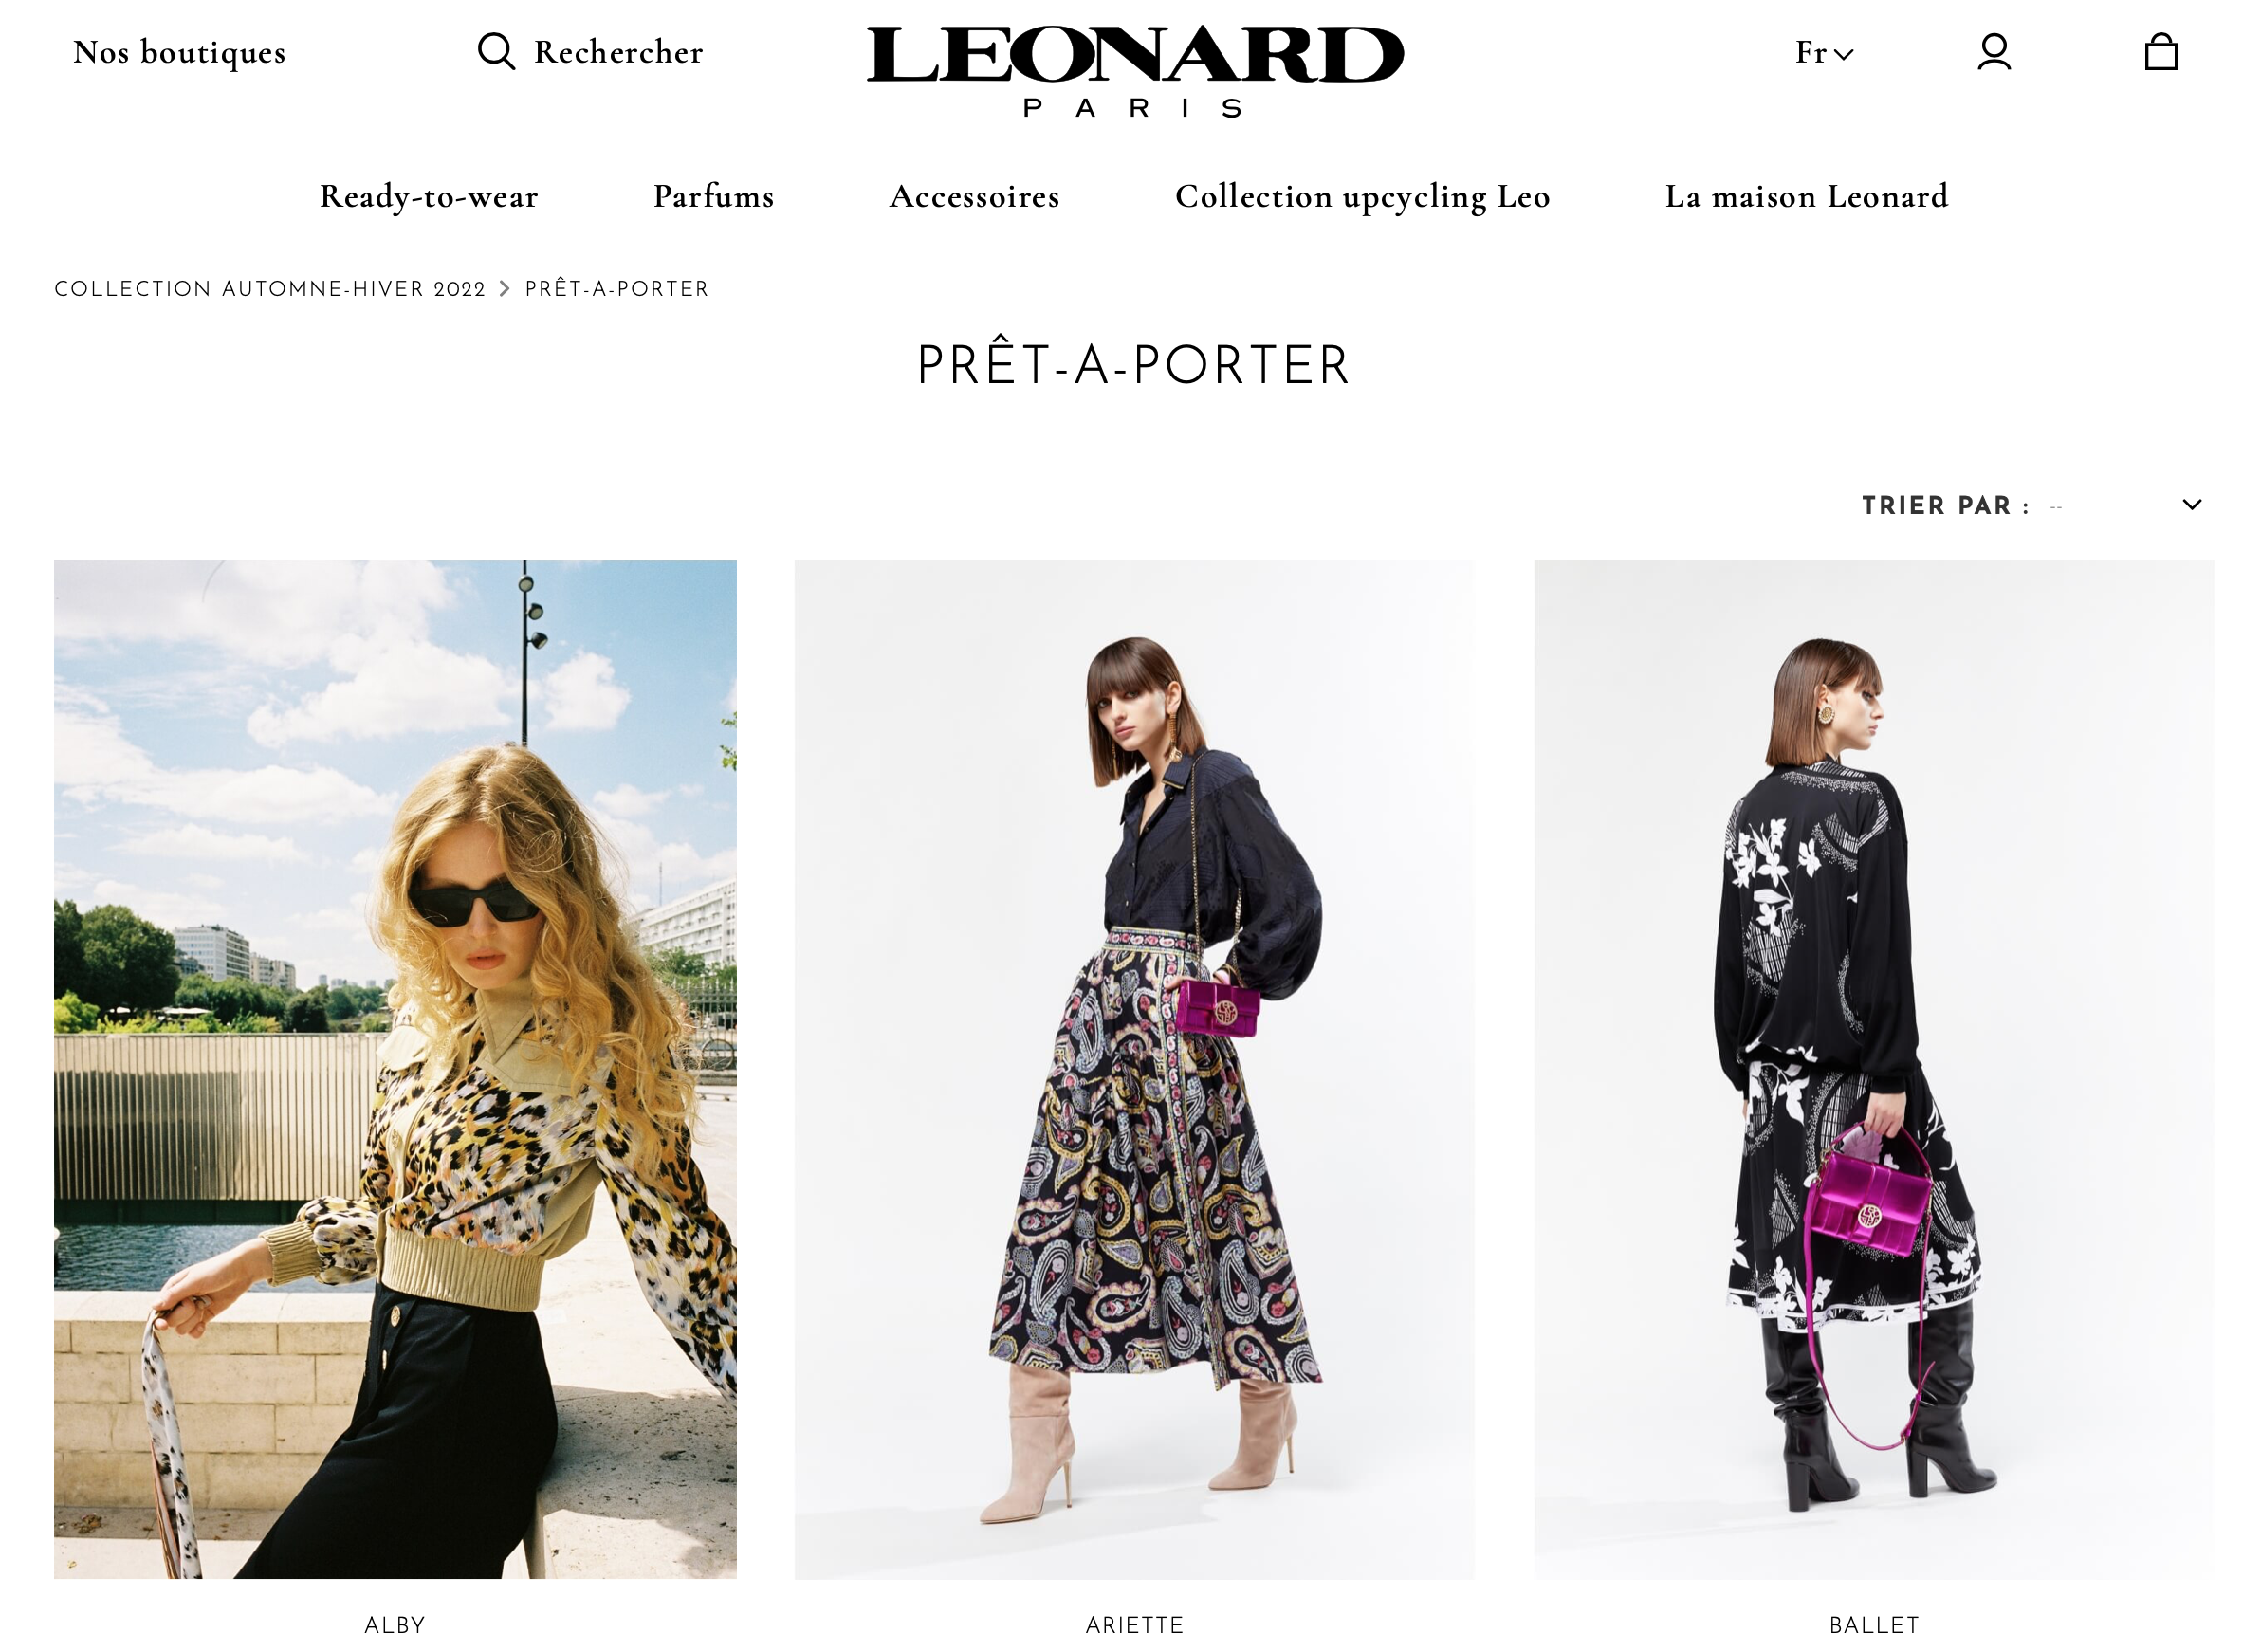 法国时装品牌 Leonard 被日本合作方 Sankyo Seiko 收购，配饰和中国市场是未来发展重心